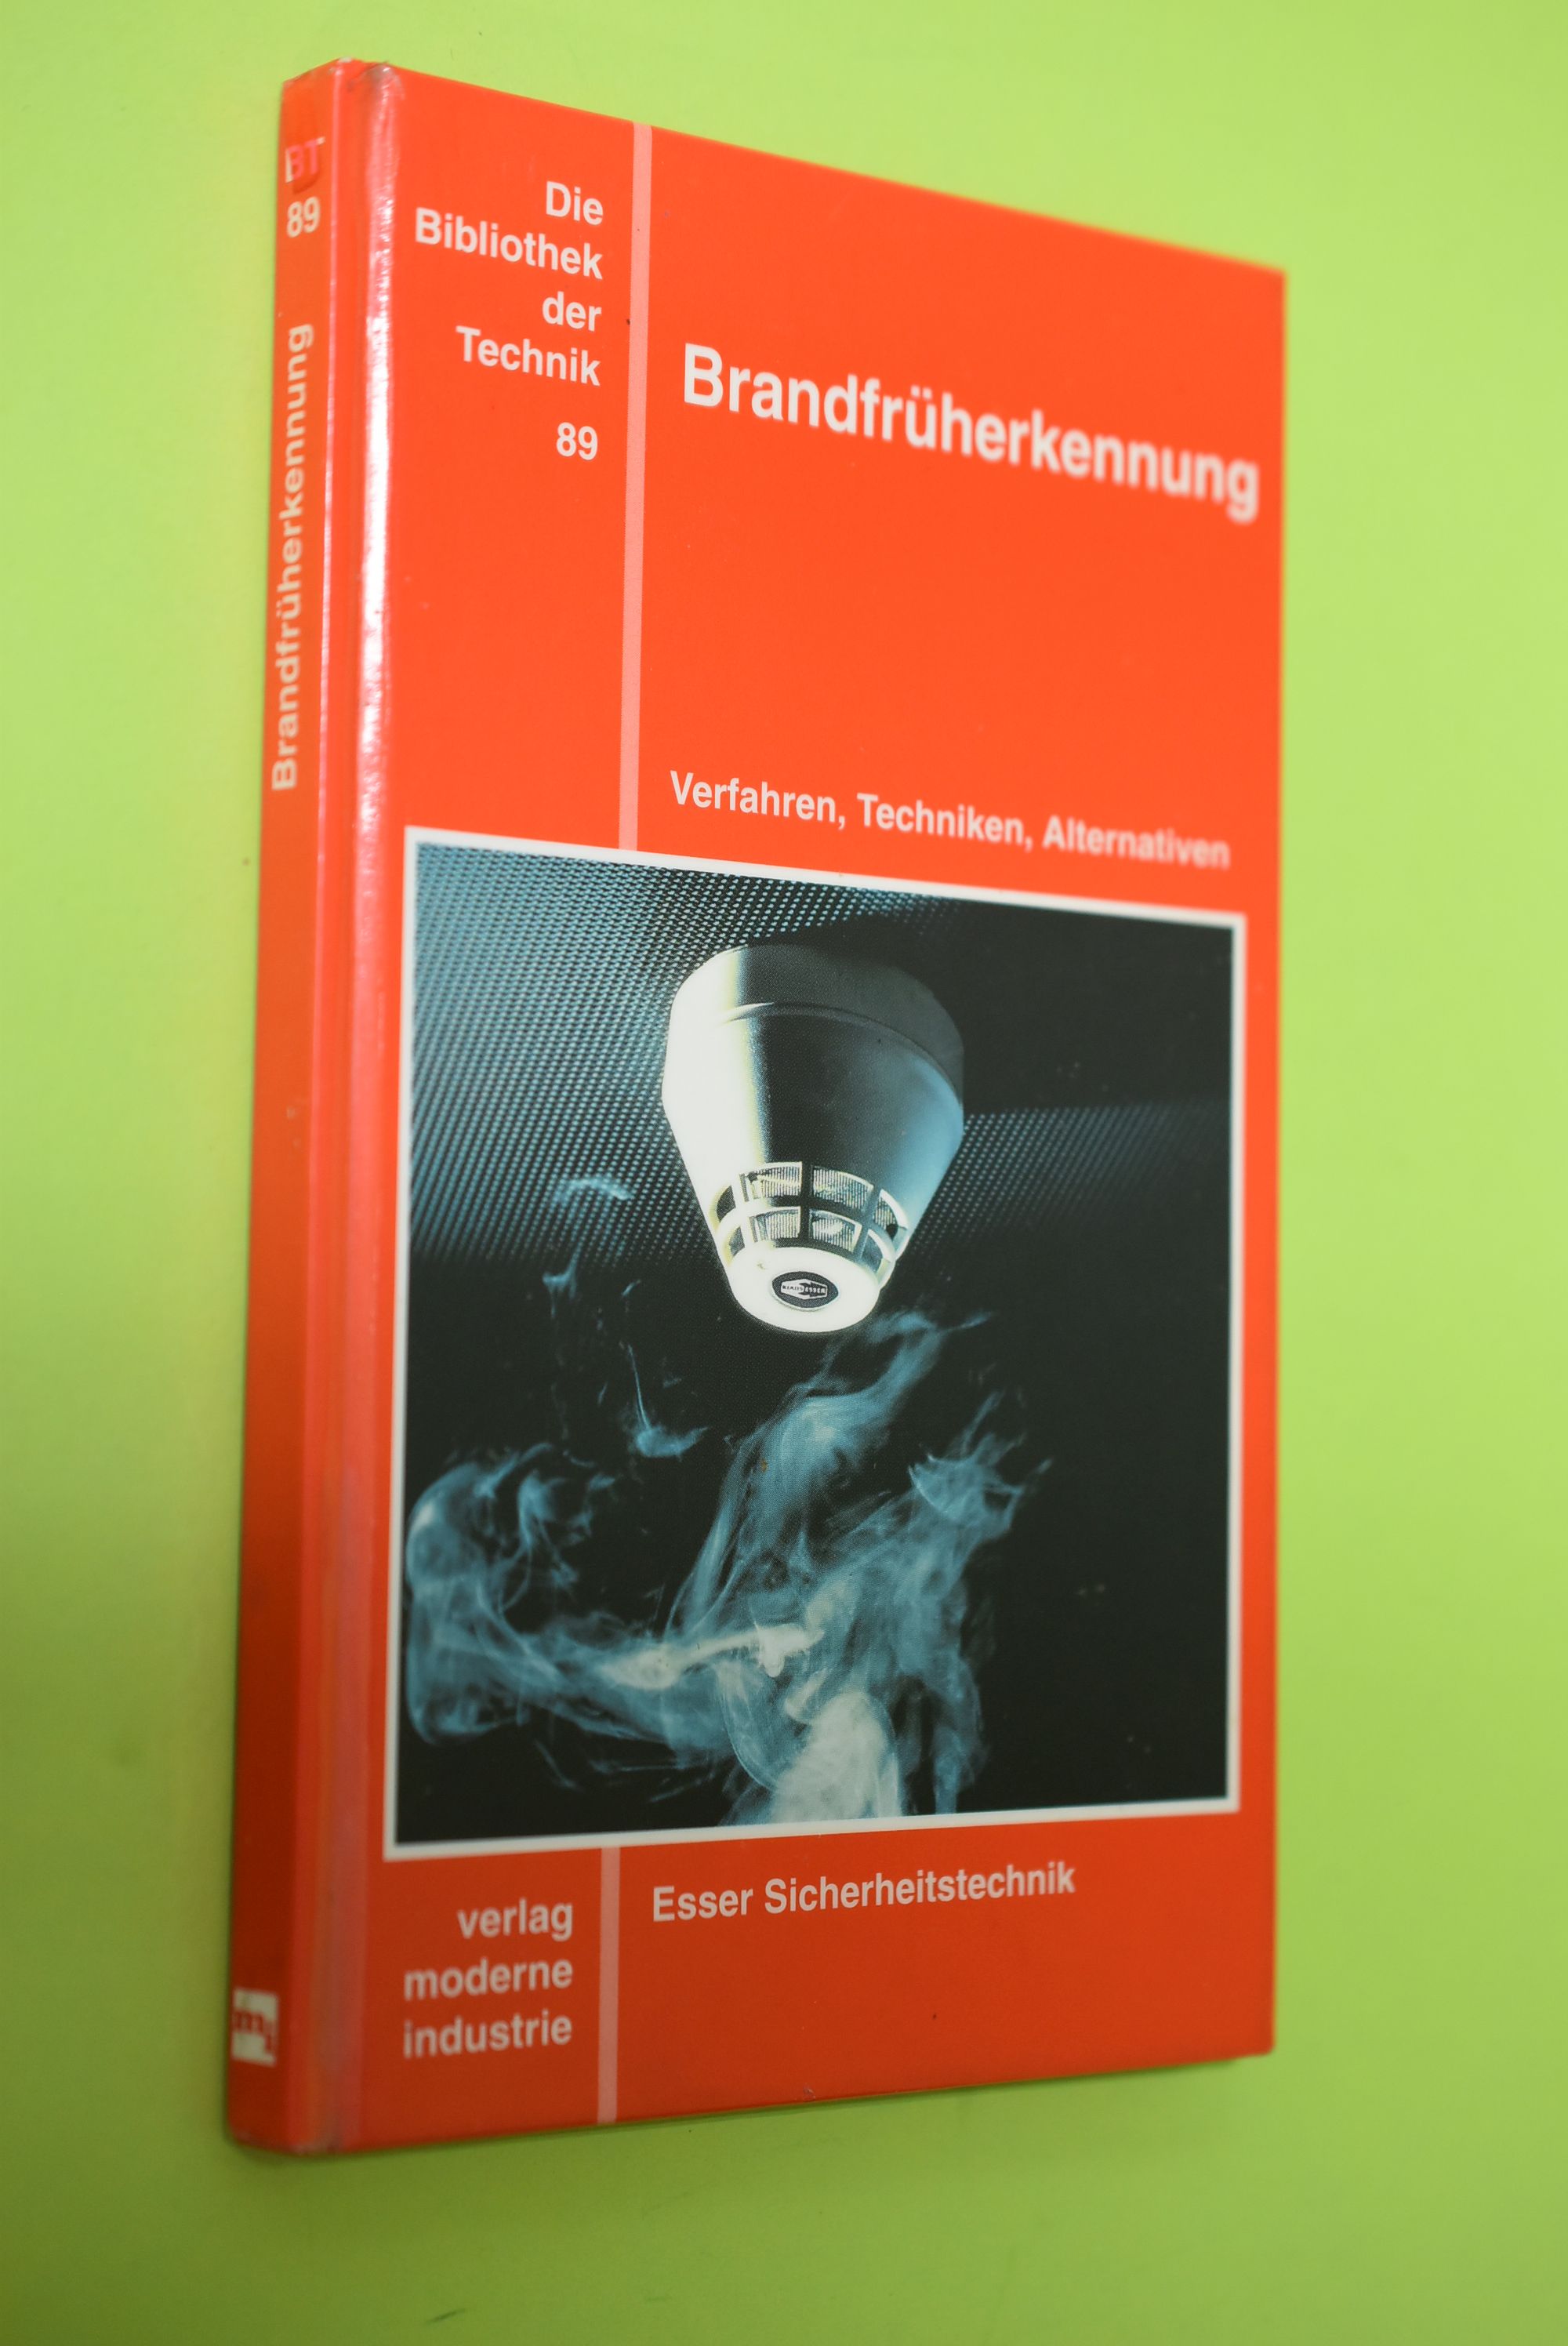 Brandfrüherkennung : Verfahren, Techniken, Alternativen. [Esser-Sicherheitstechnik] / Die Bibliothek der Technik ; Bd. 89 - Schmidhäusler, Fritz J.